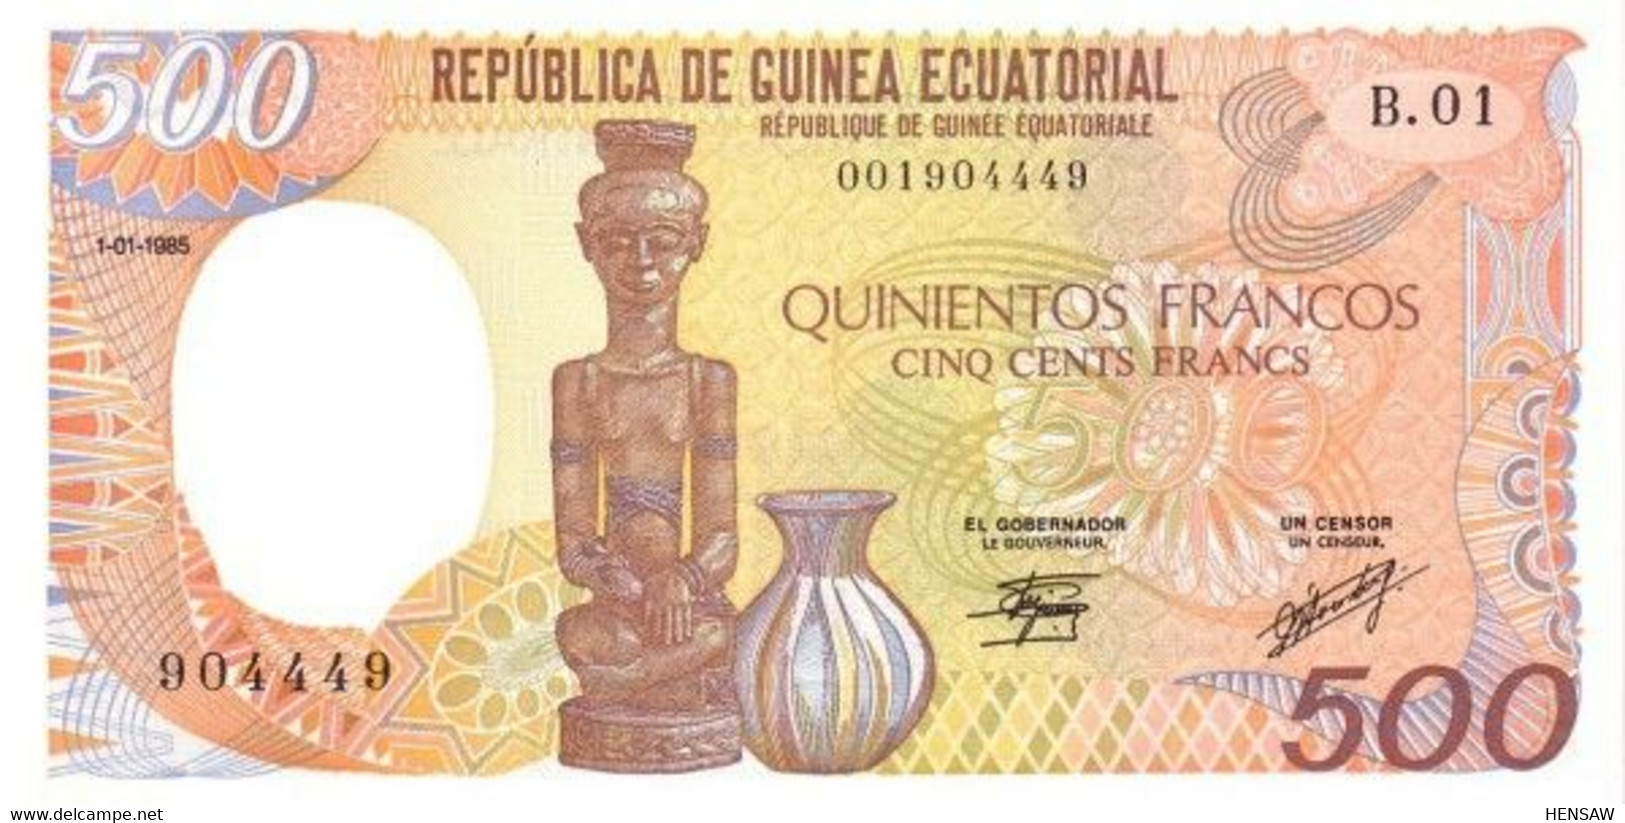 EQUATORIAL GUINEA 500 FRANCS 1985 P 20 UNC SC NUEVO - Guinea Equatoriale